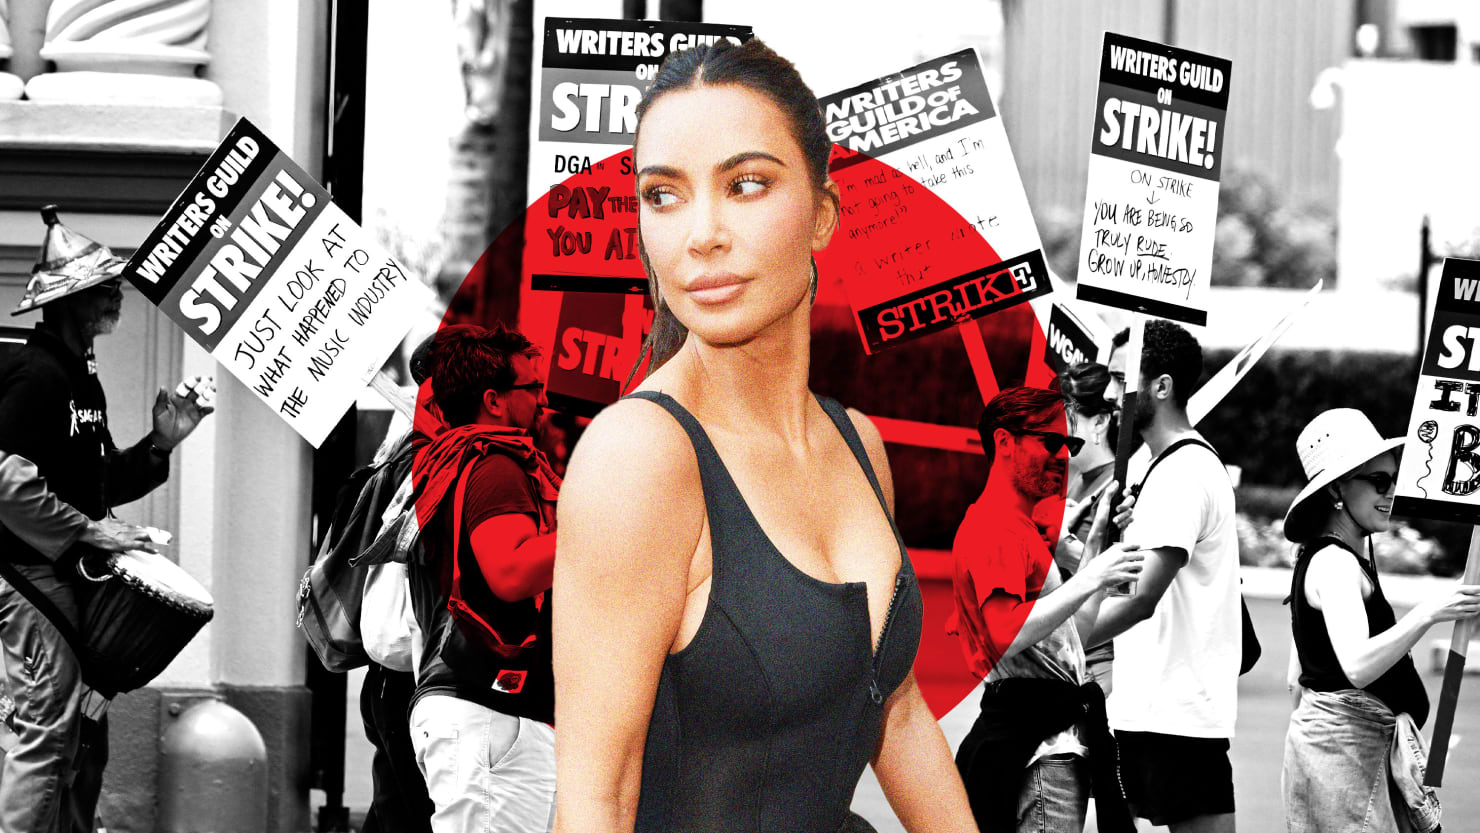 Kim Kardashian calls for crossing the WGA picket line